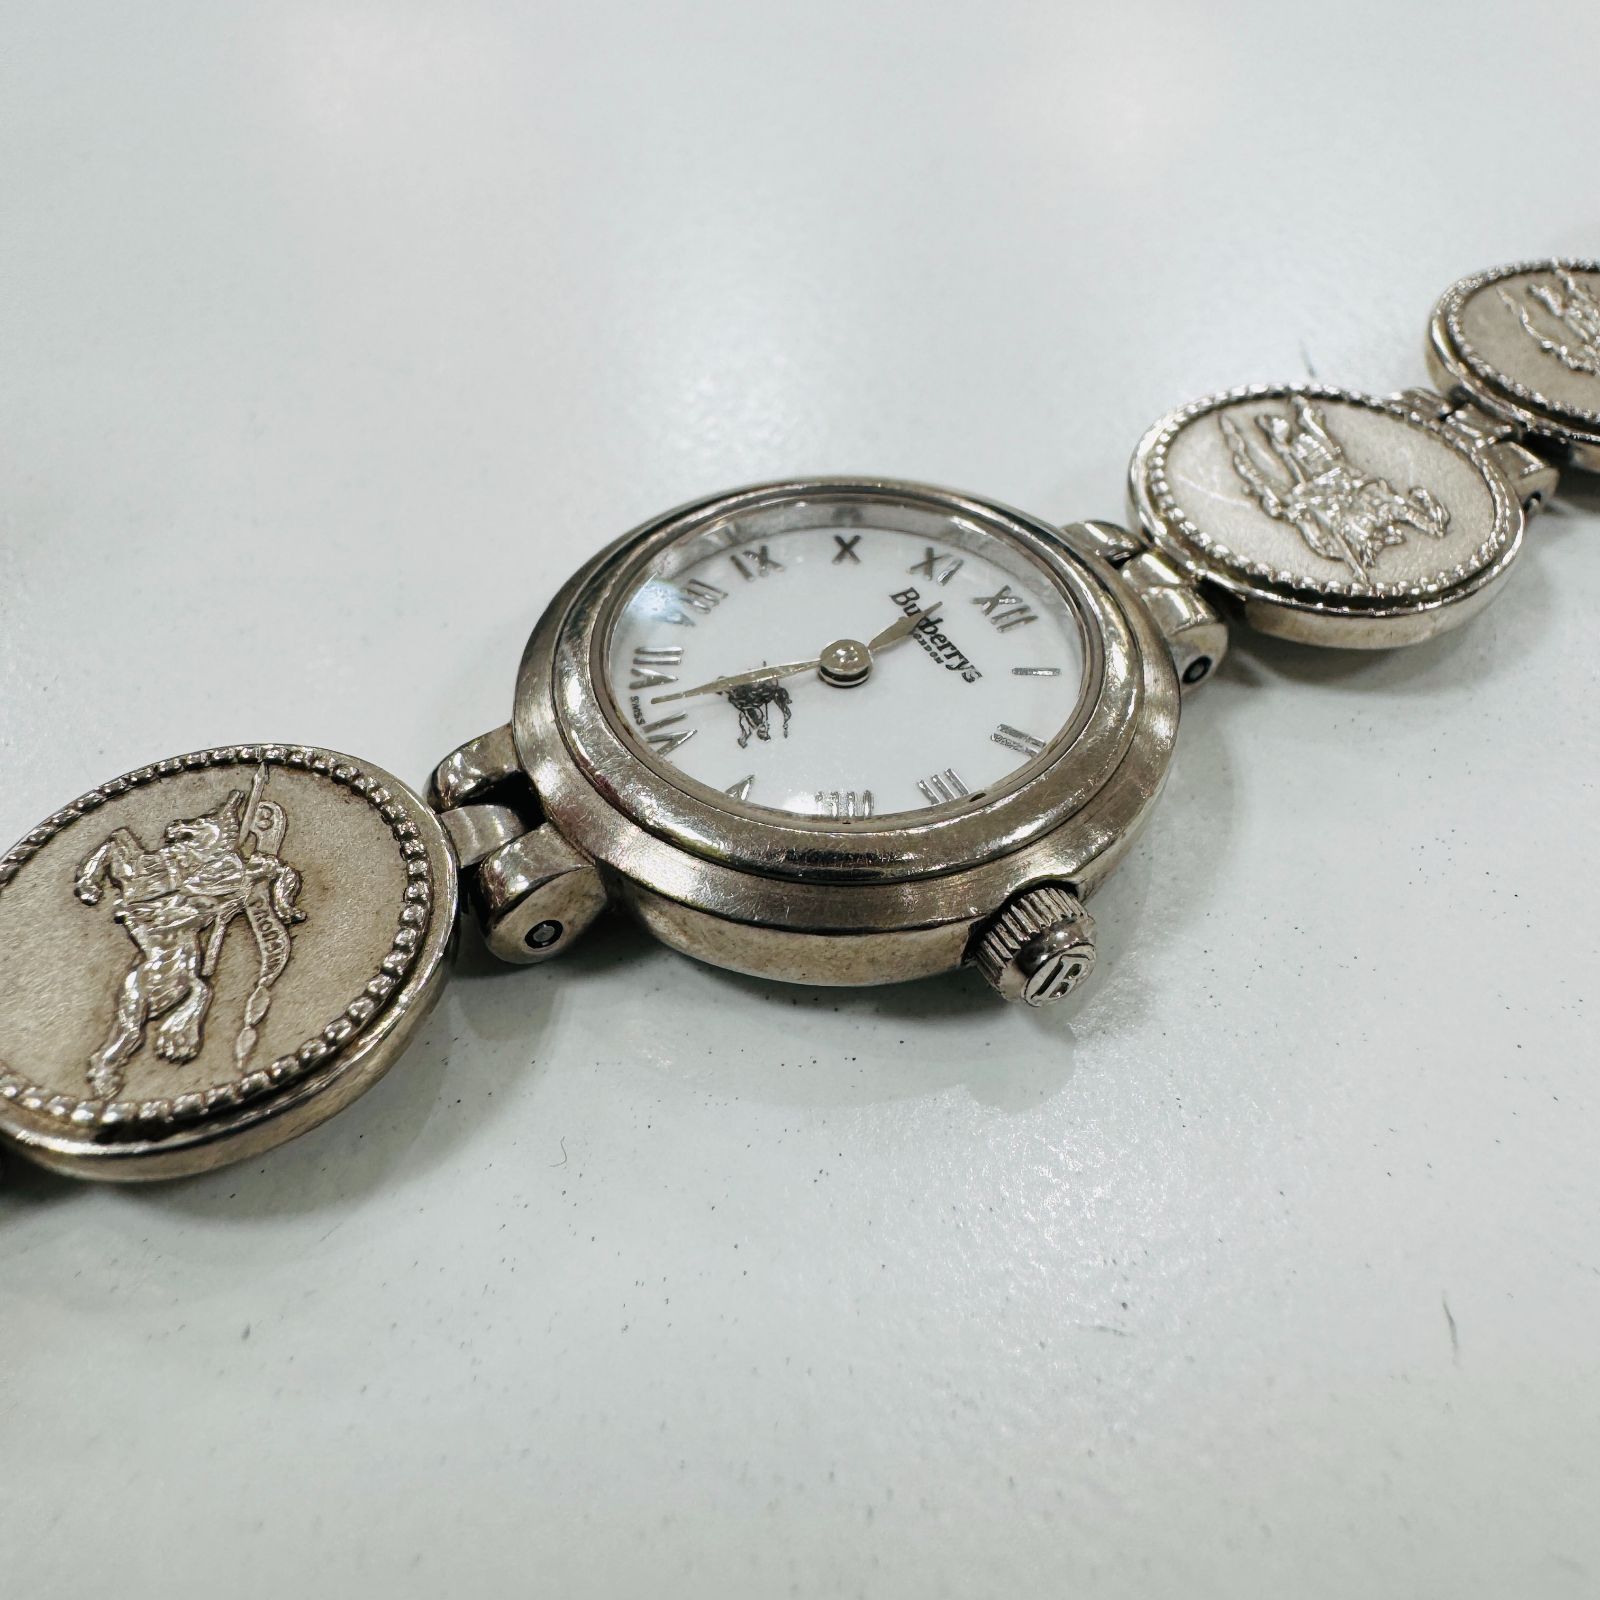 A【ヴィンテージ】Burberry バーバリー 腕時計 コインウォッチ 11100L 